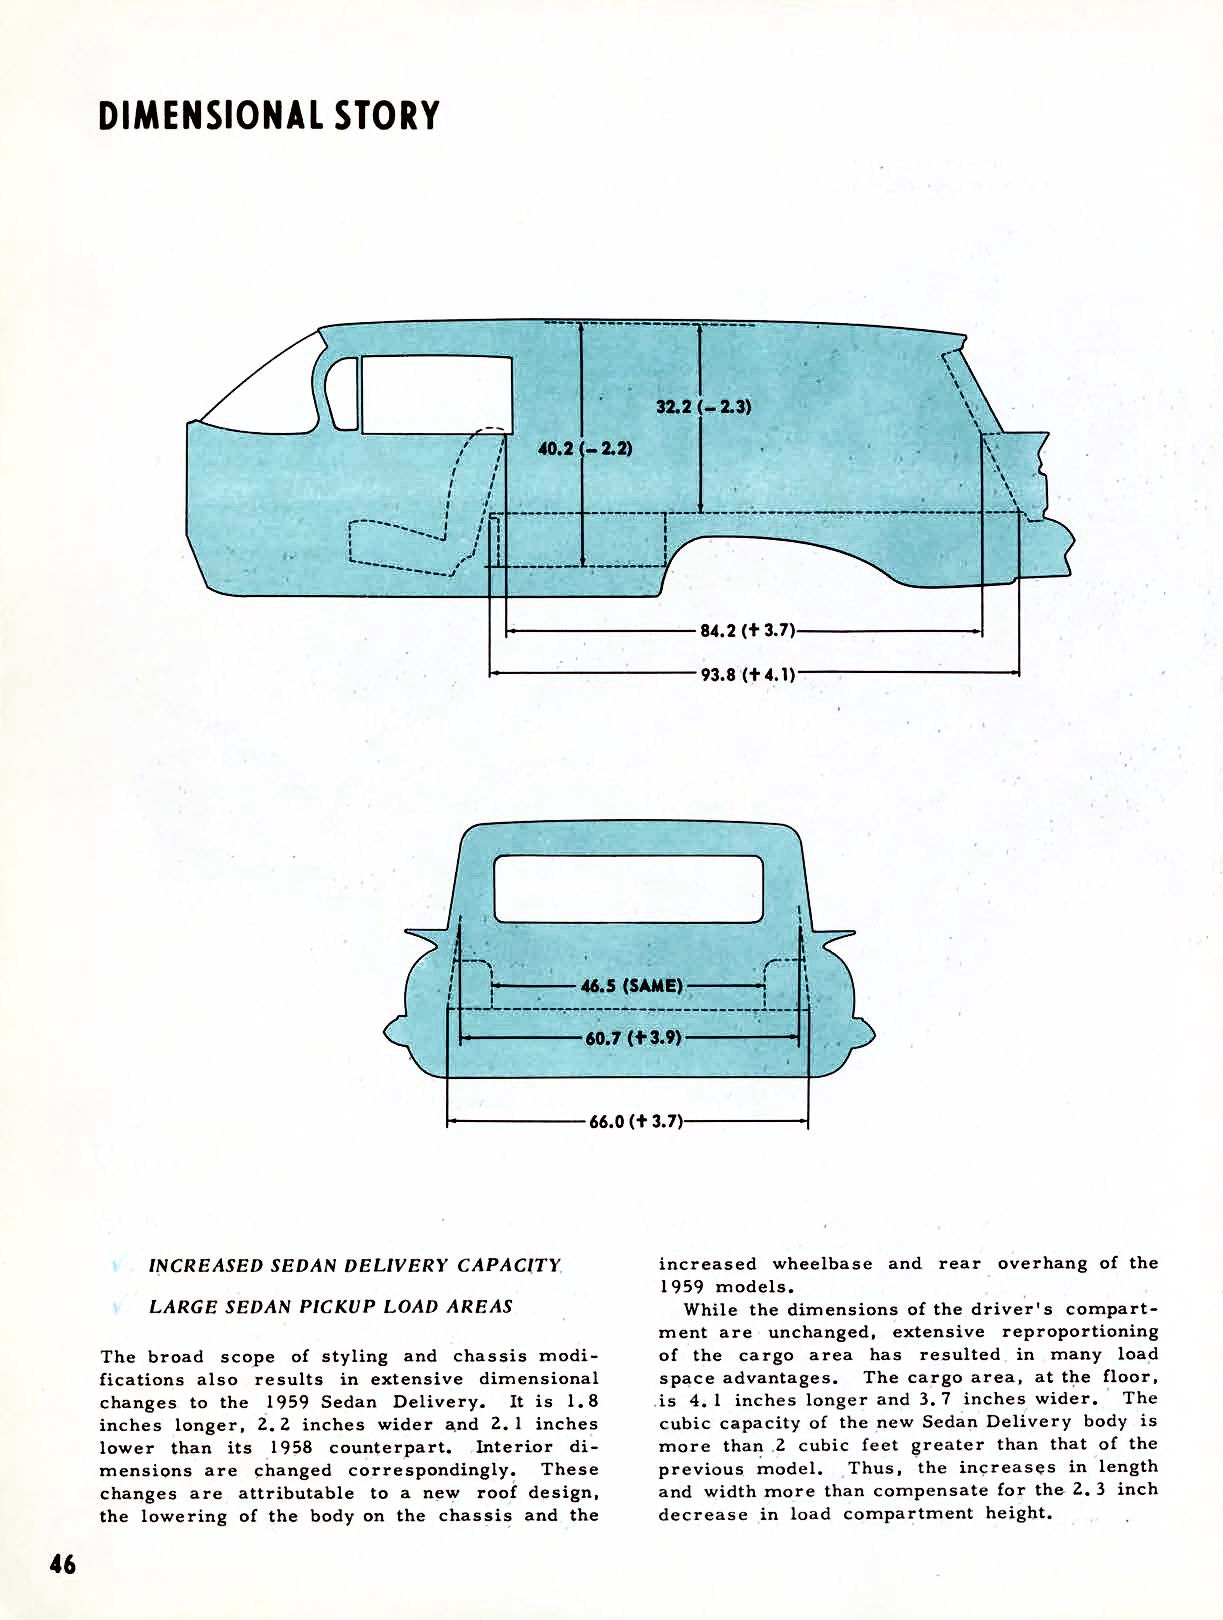 1959 Chevrolet Truck Engineering Features-46